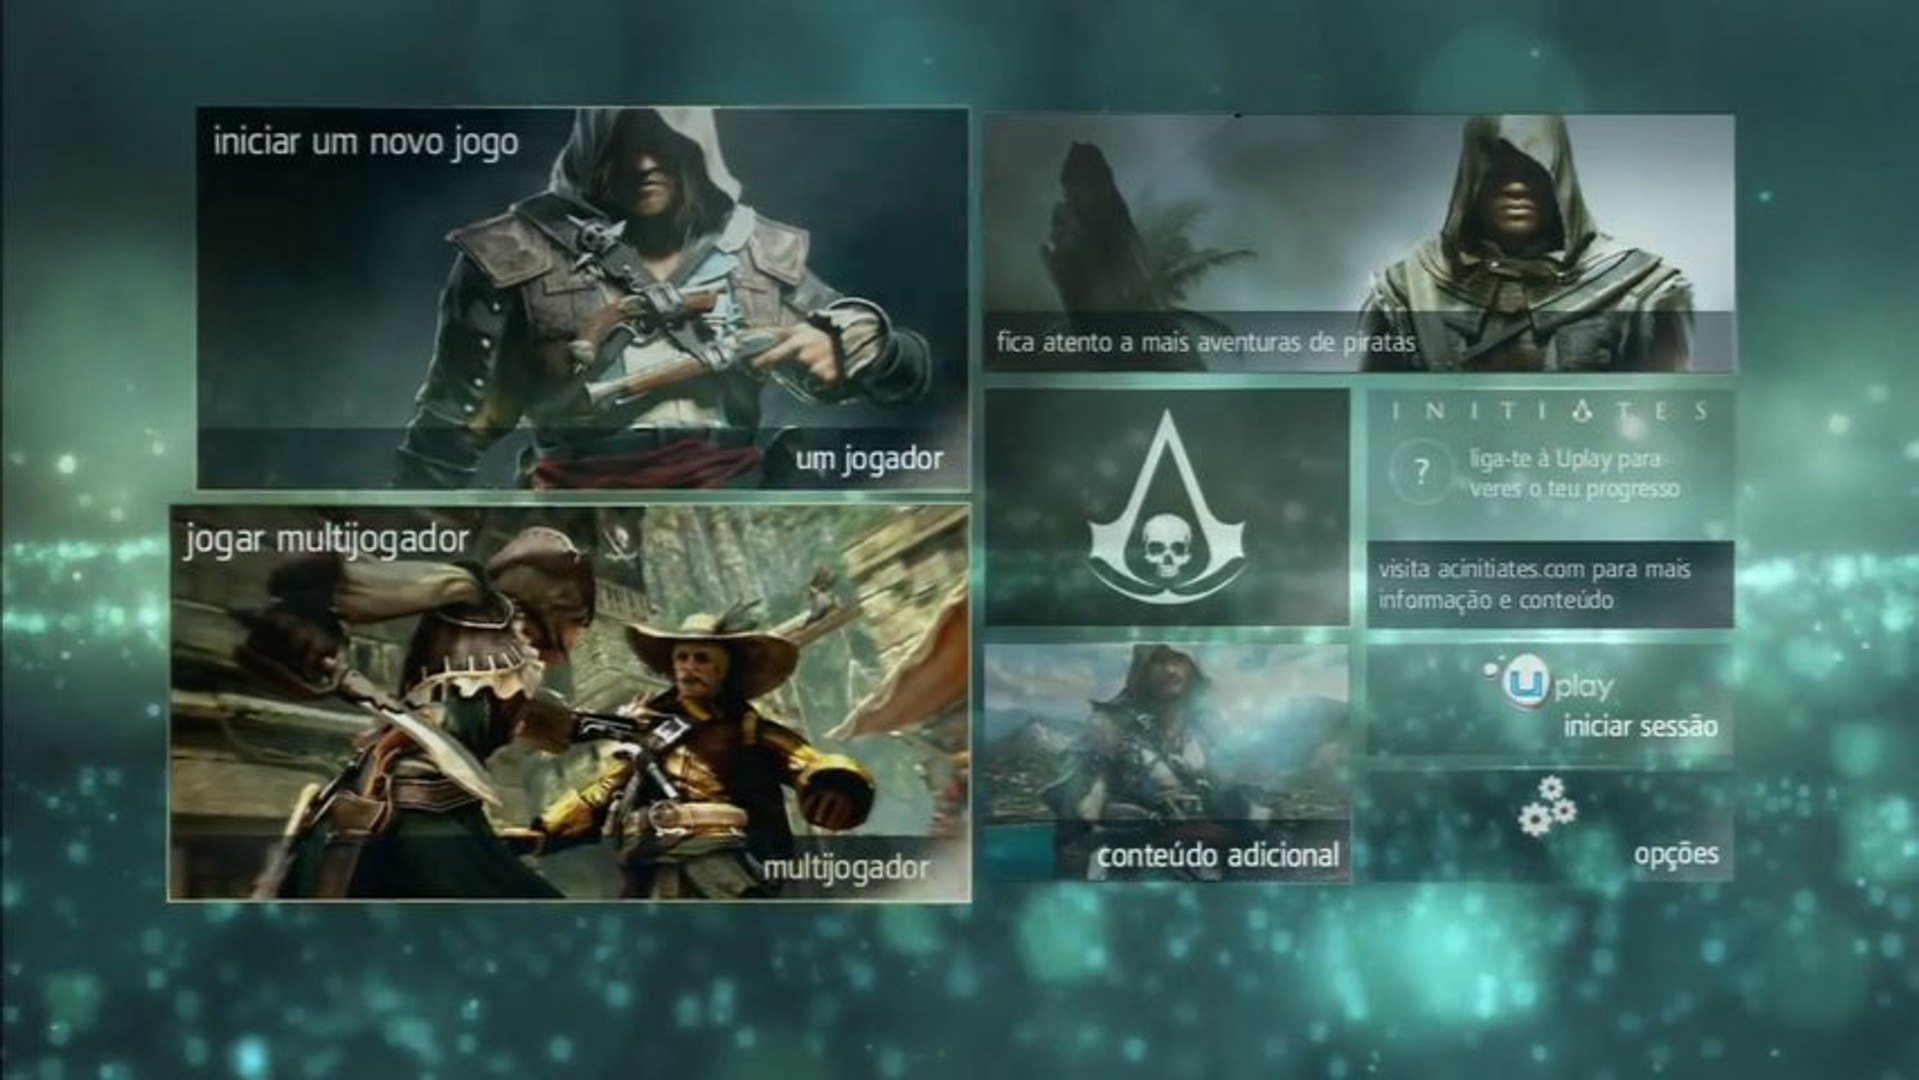 Assassin's Creed Bloodlines - A Bruxa - Ep.04 (Legendado em